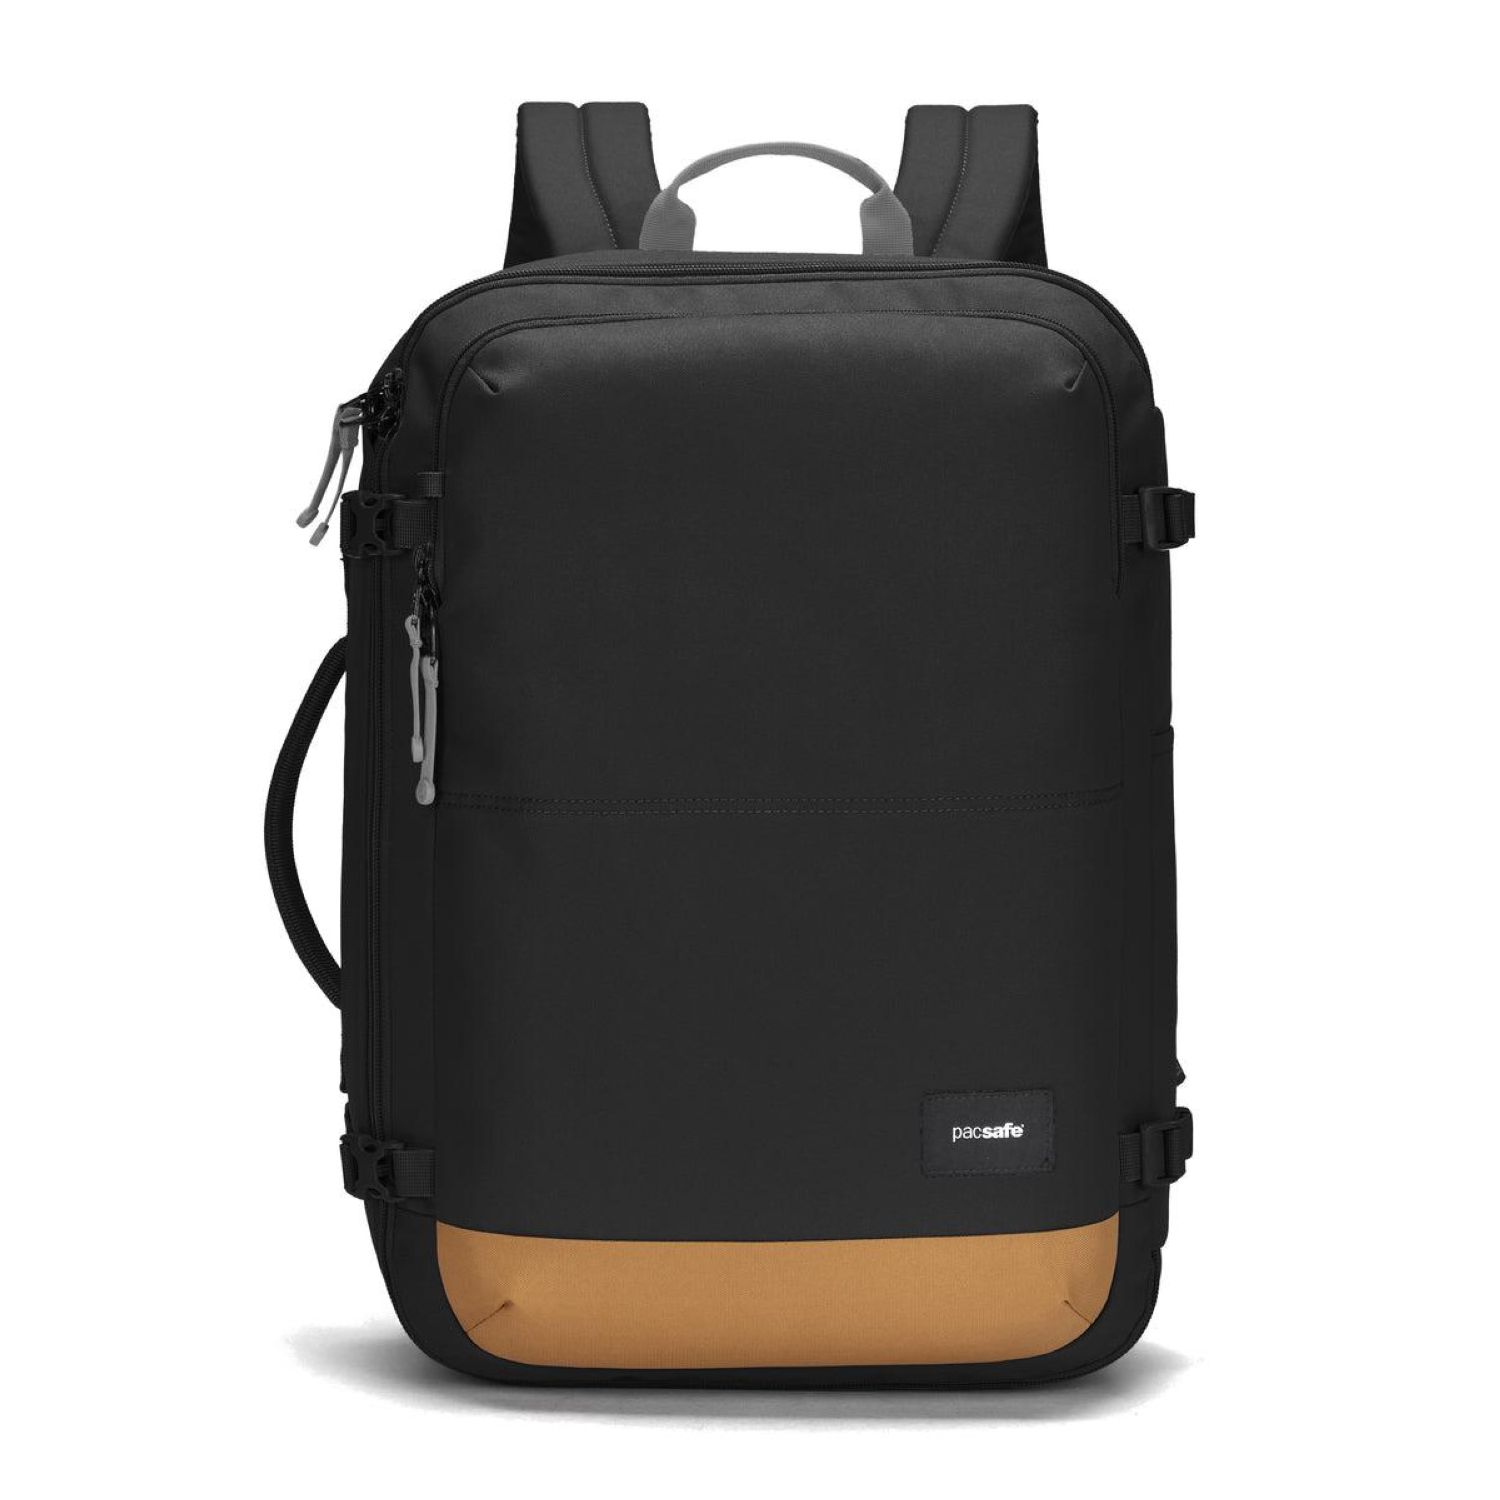 Pacsafe-GO-Carry-On-Backpack-34L-Black-1-1.jpg